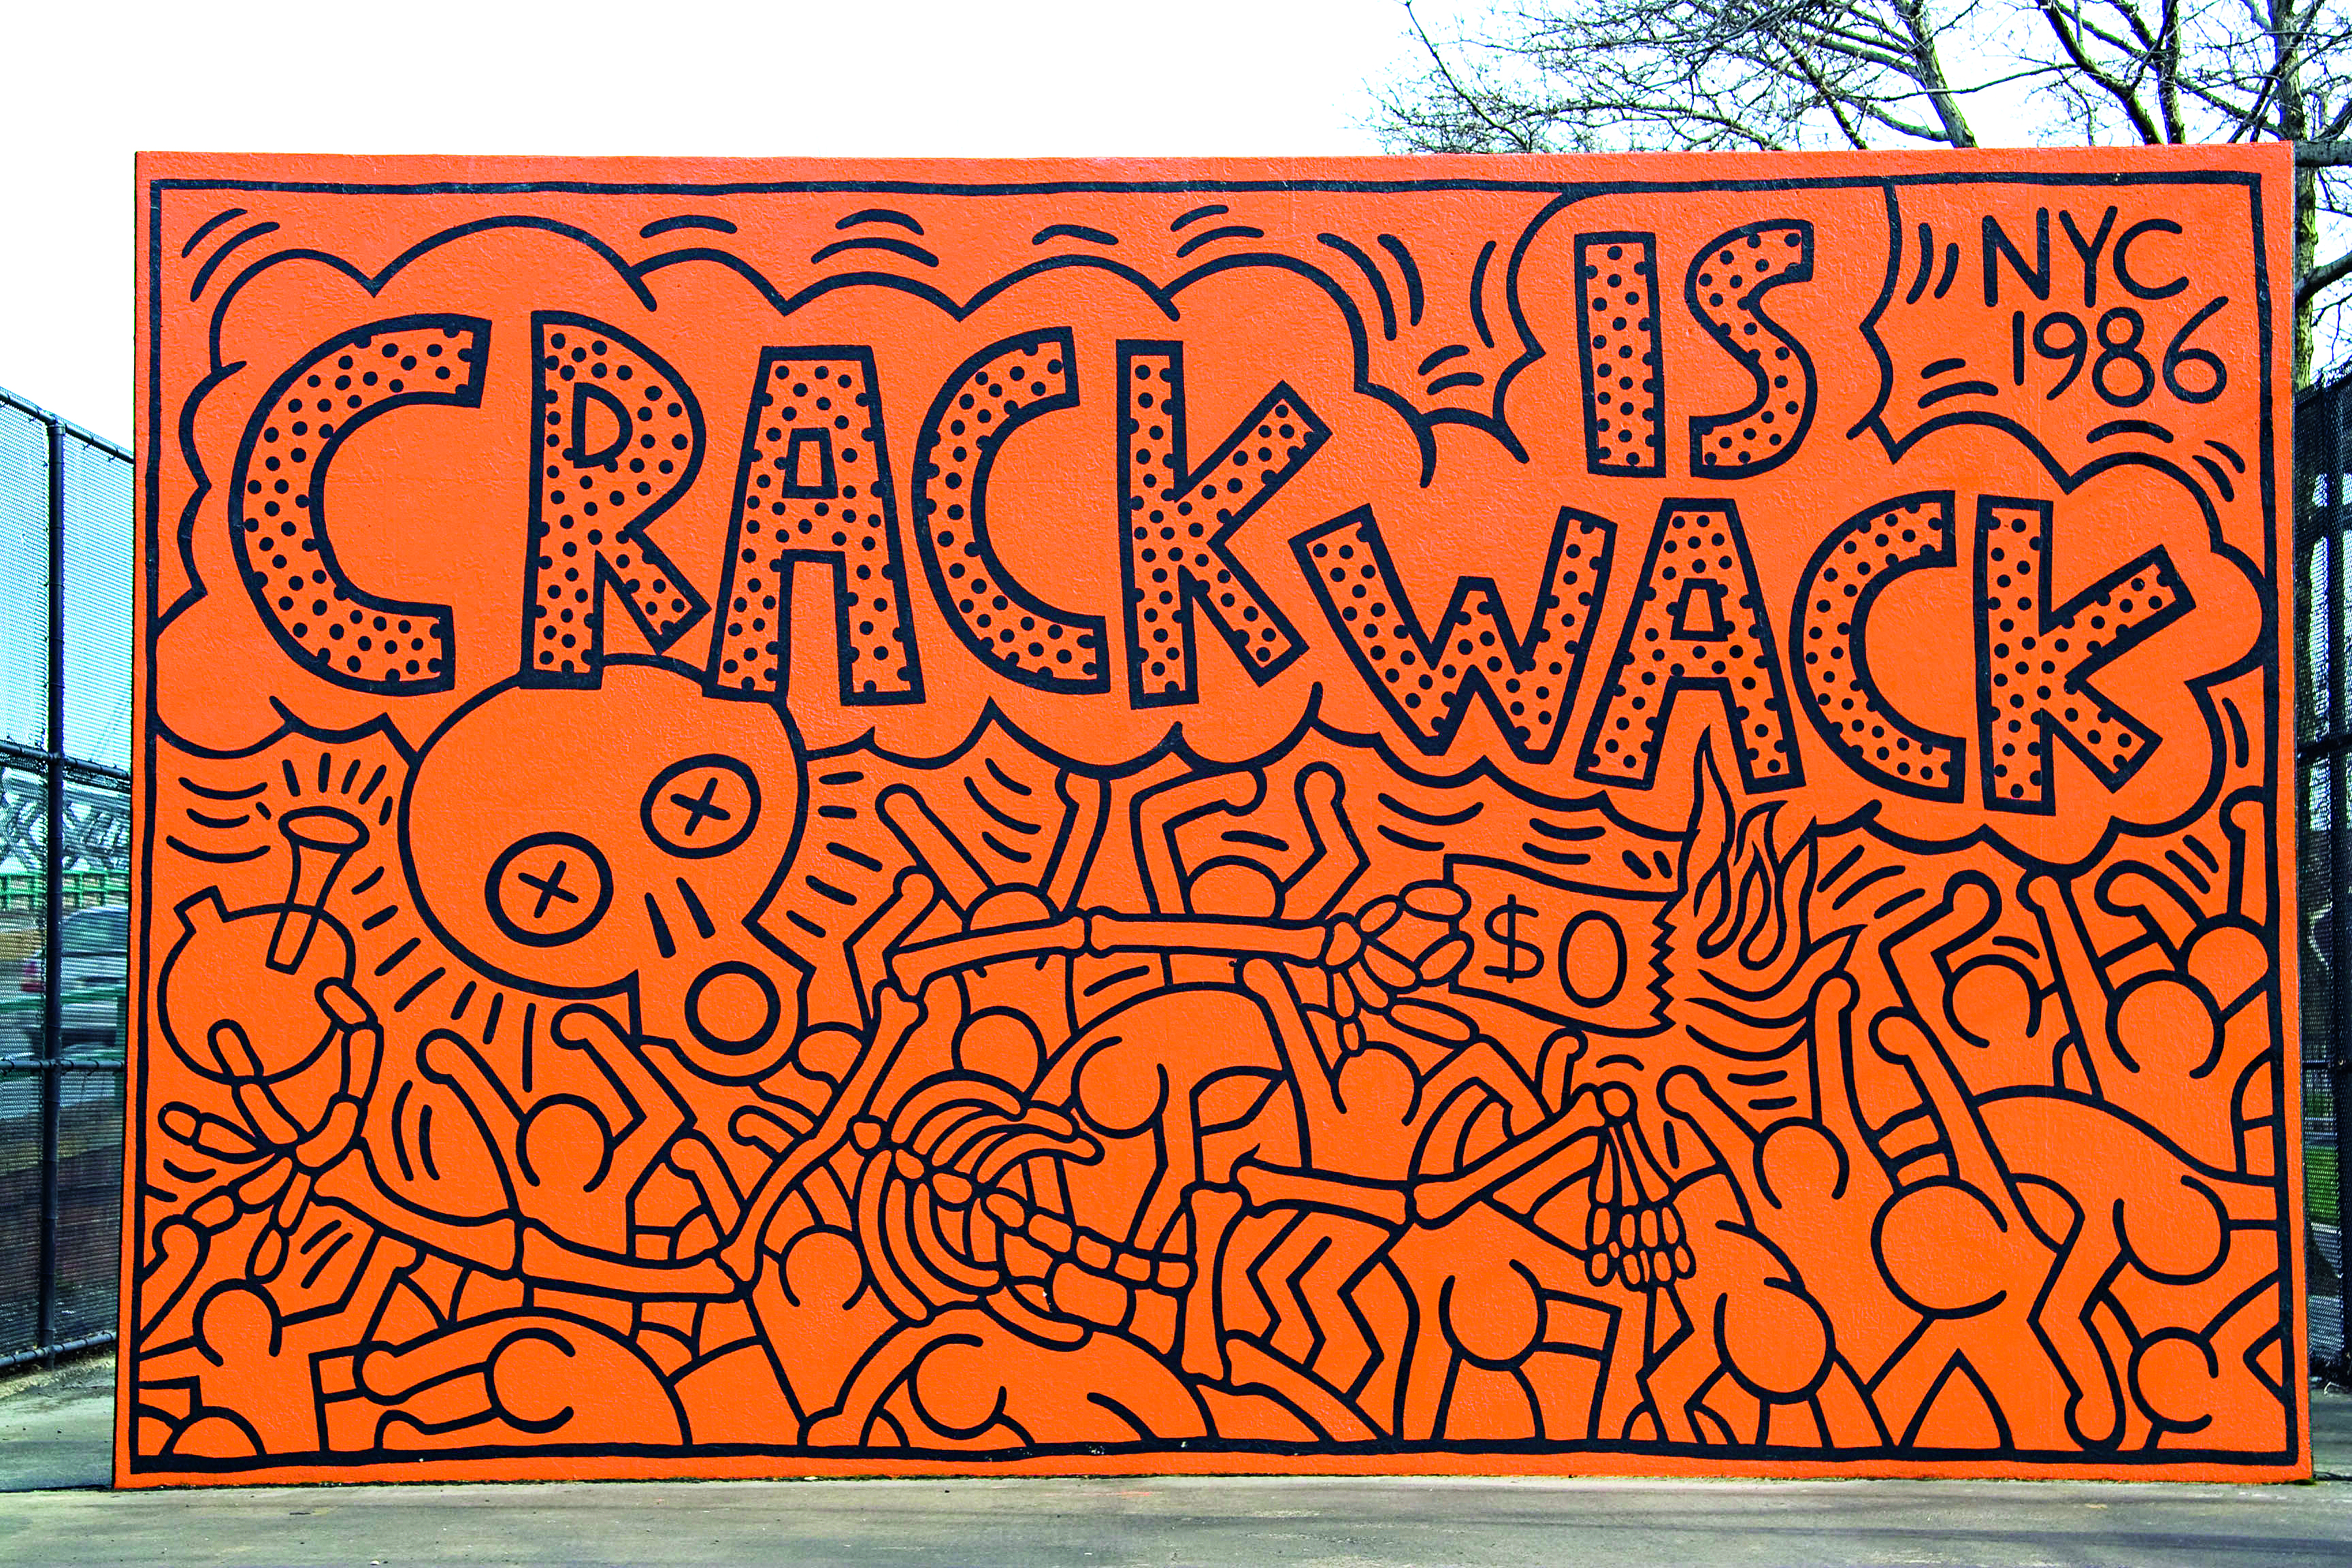 Mural Crack is wack